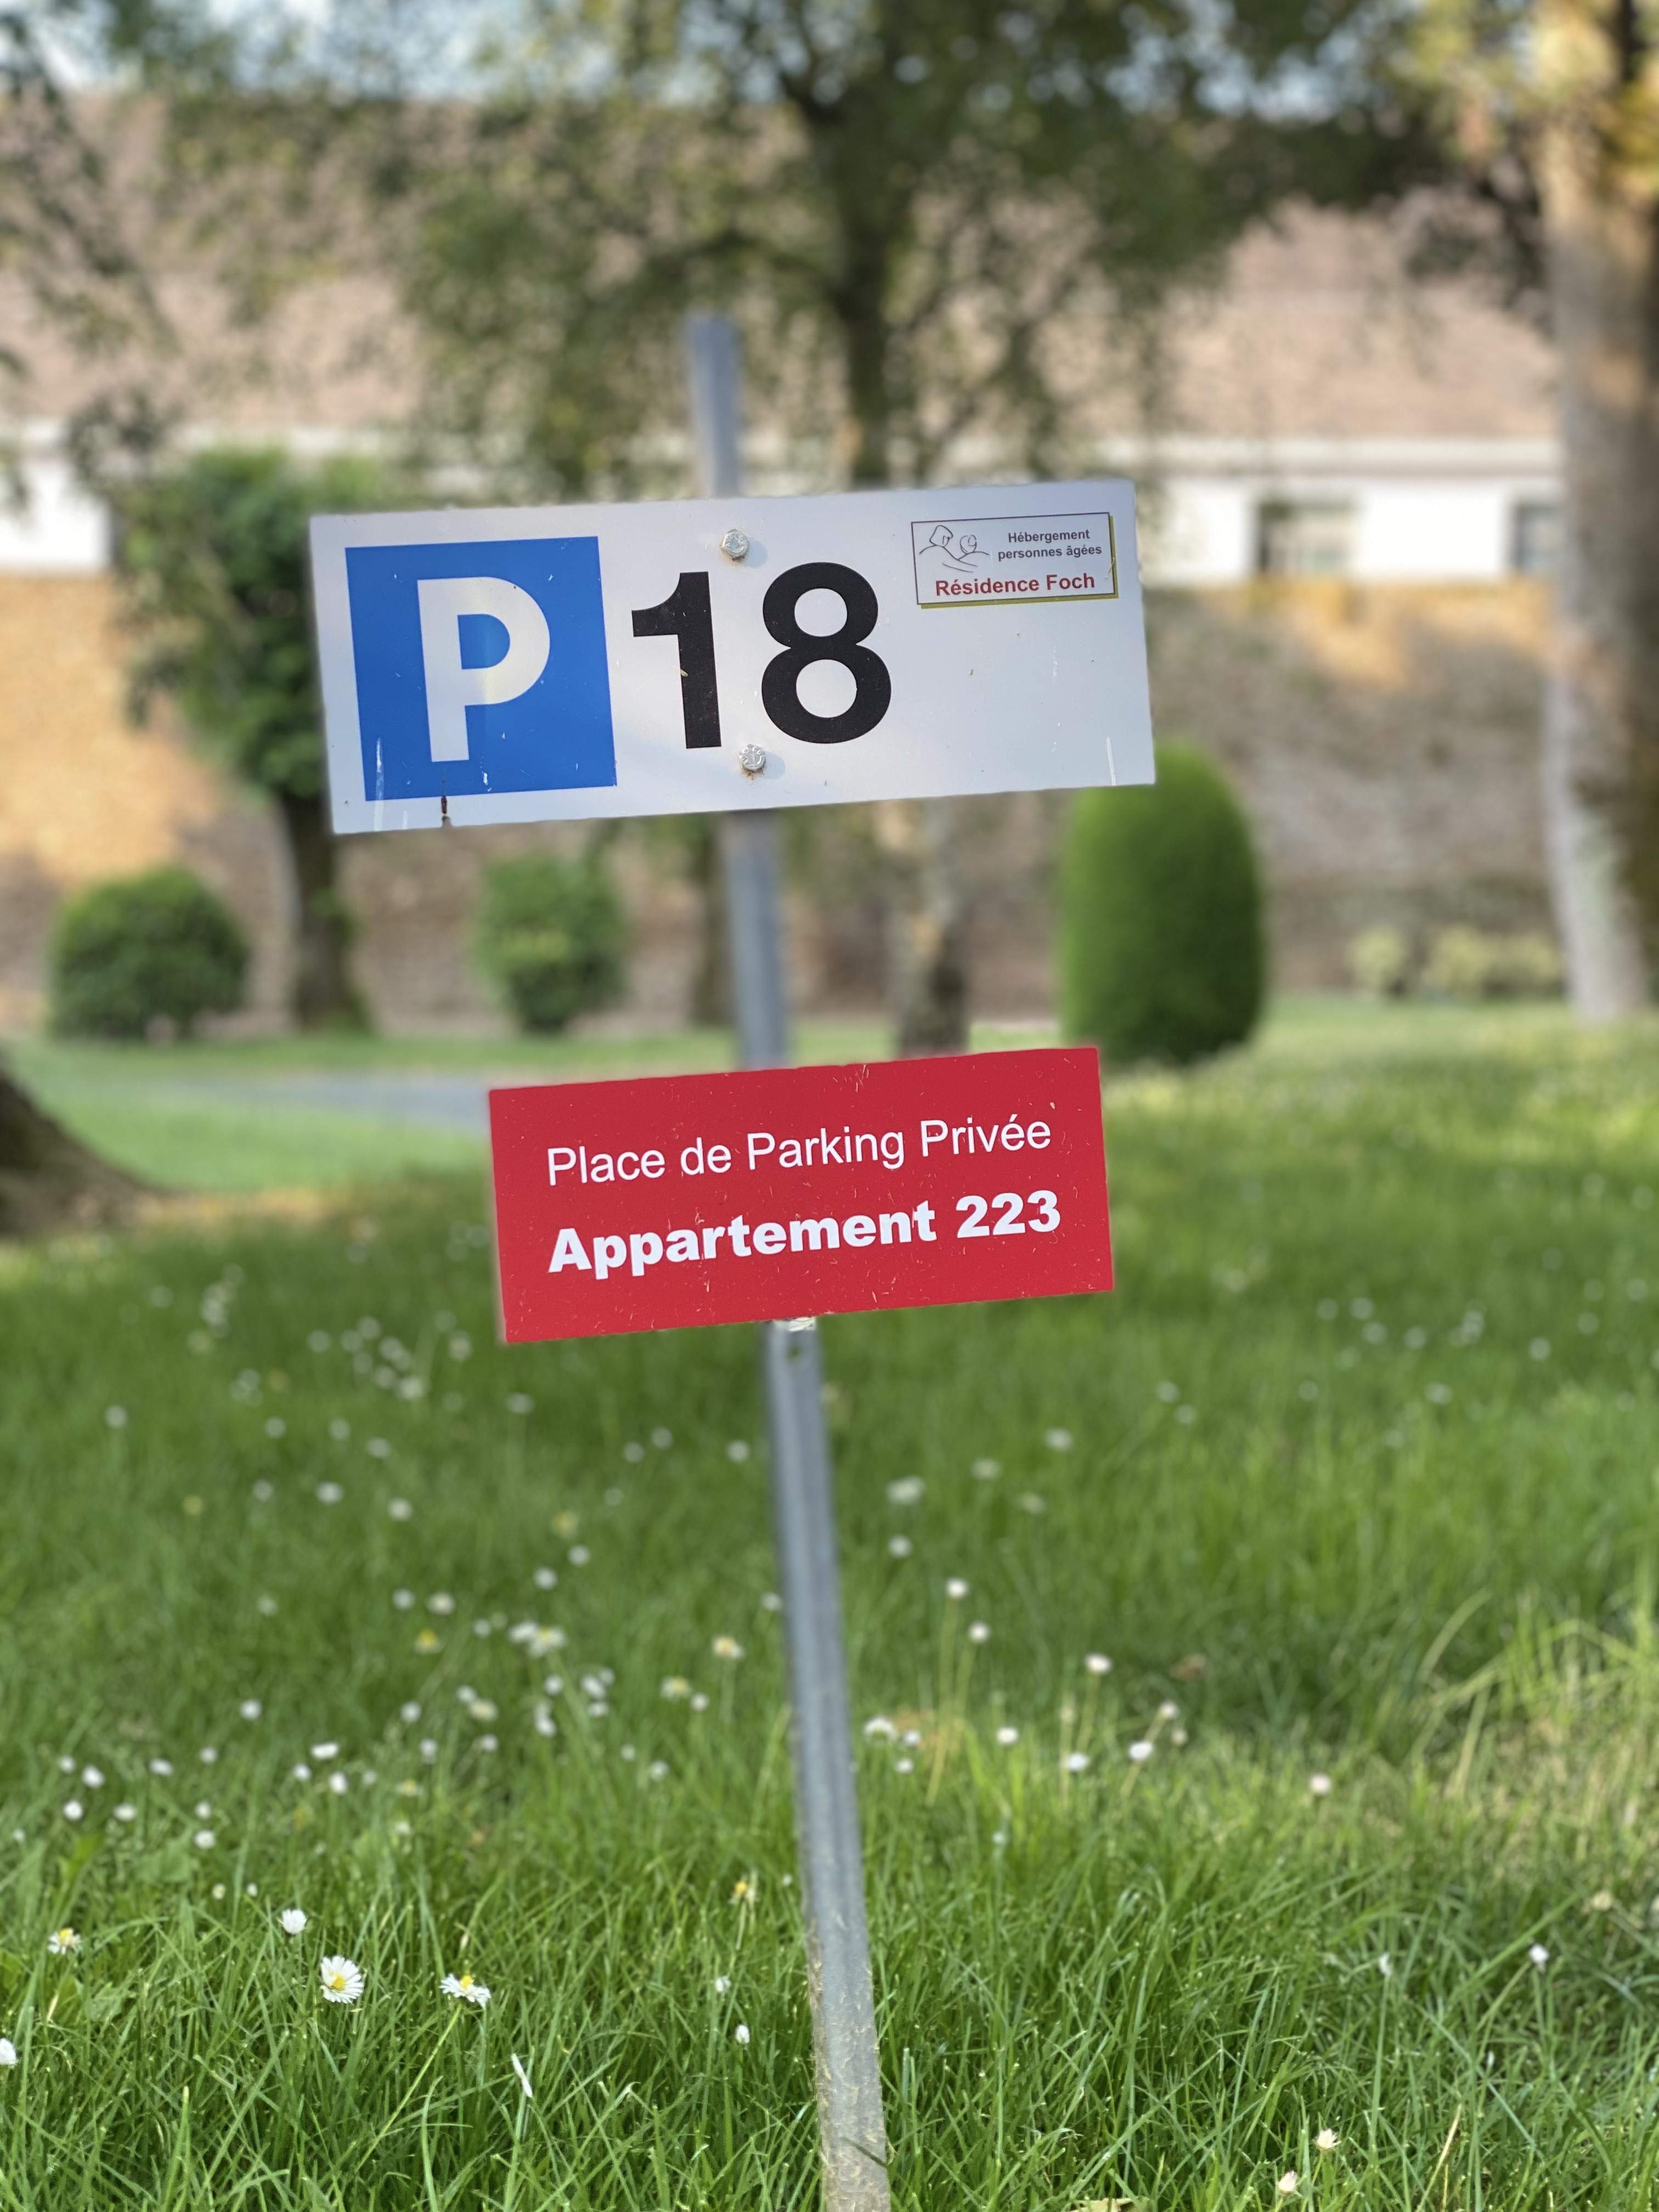 parking privatif sous vidéo surveillance